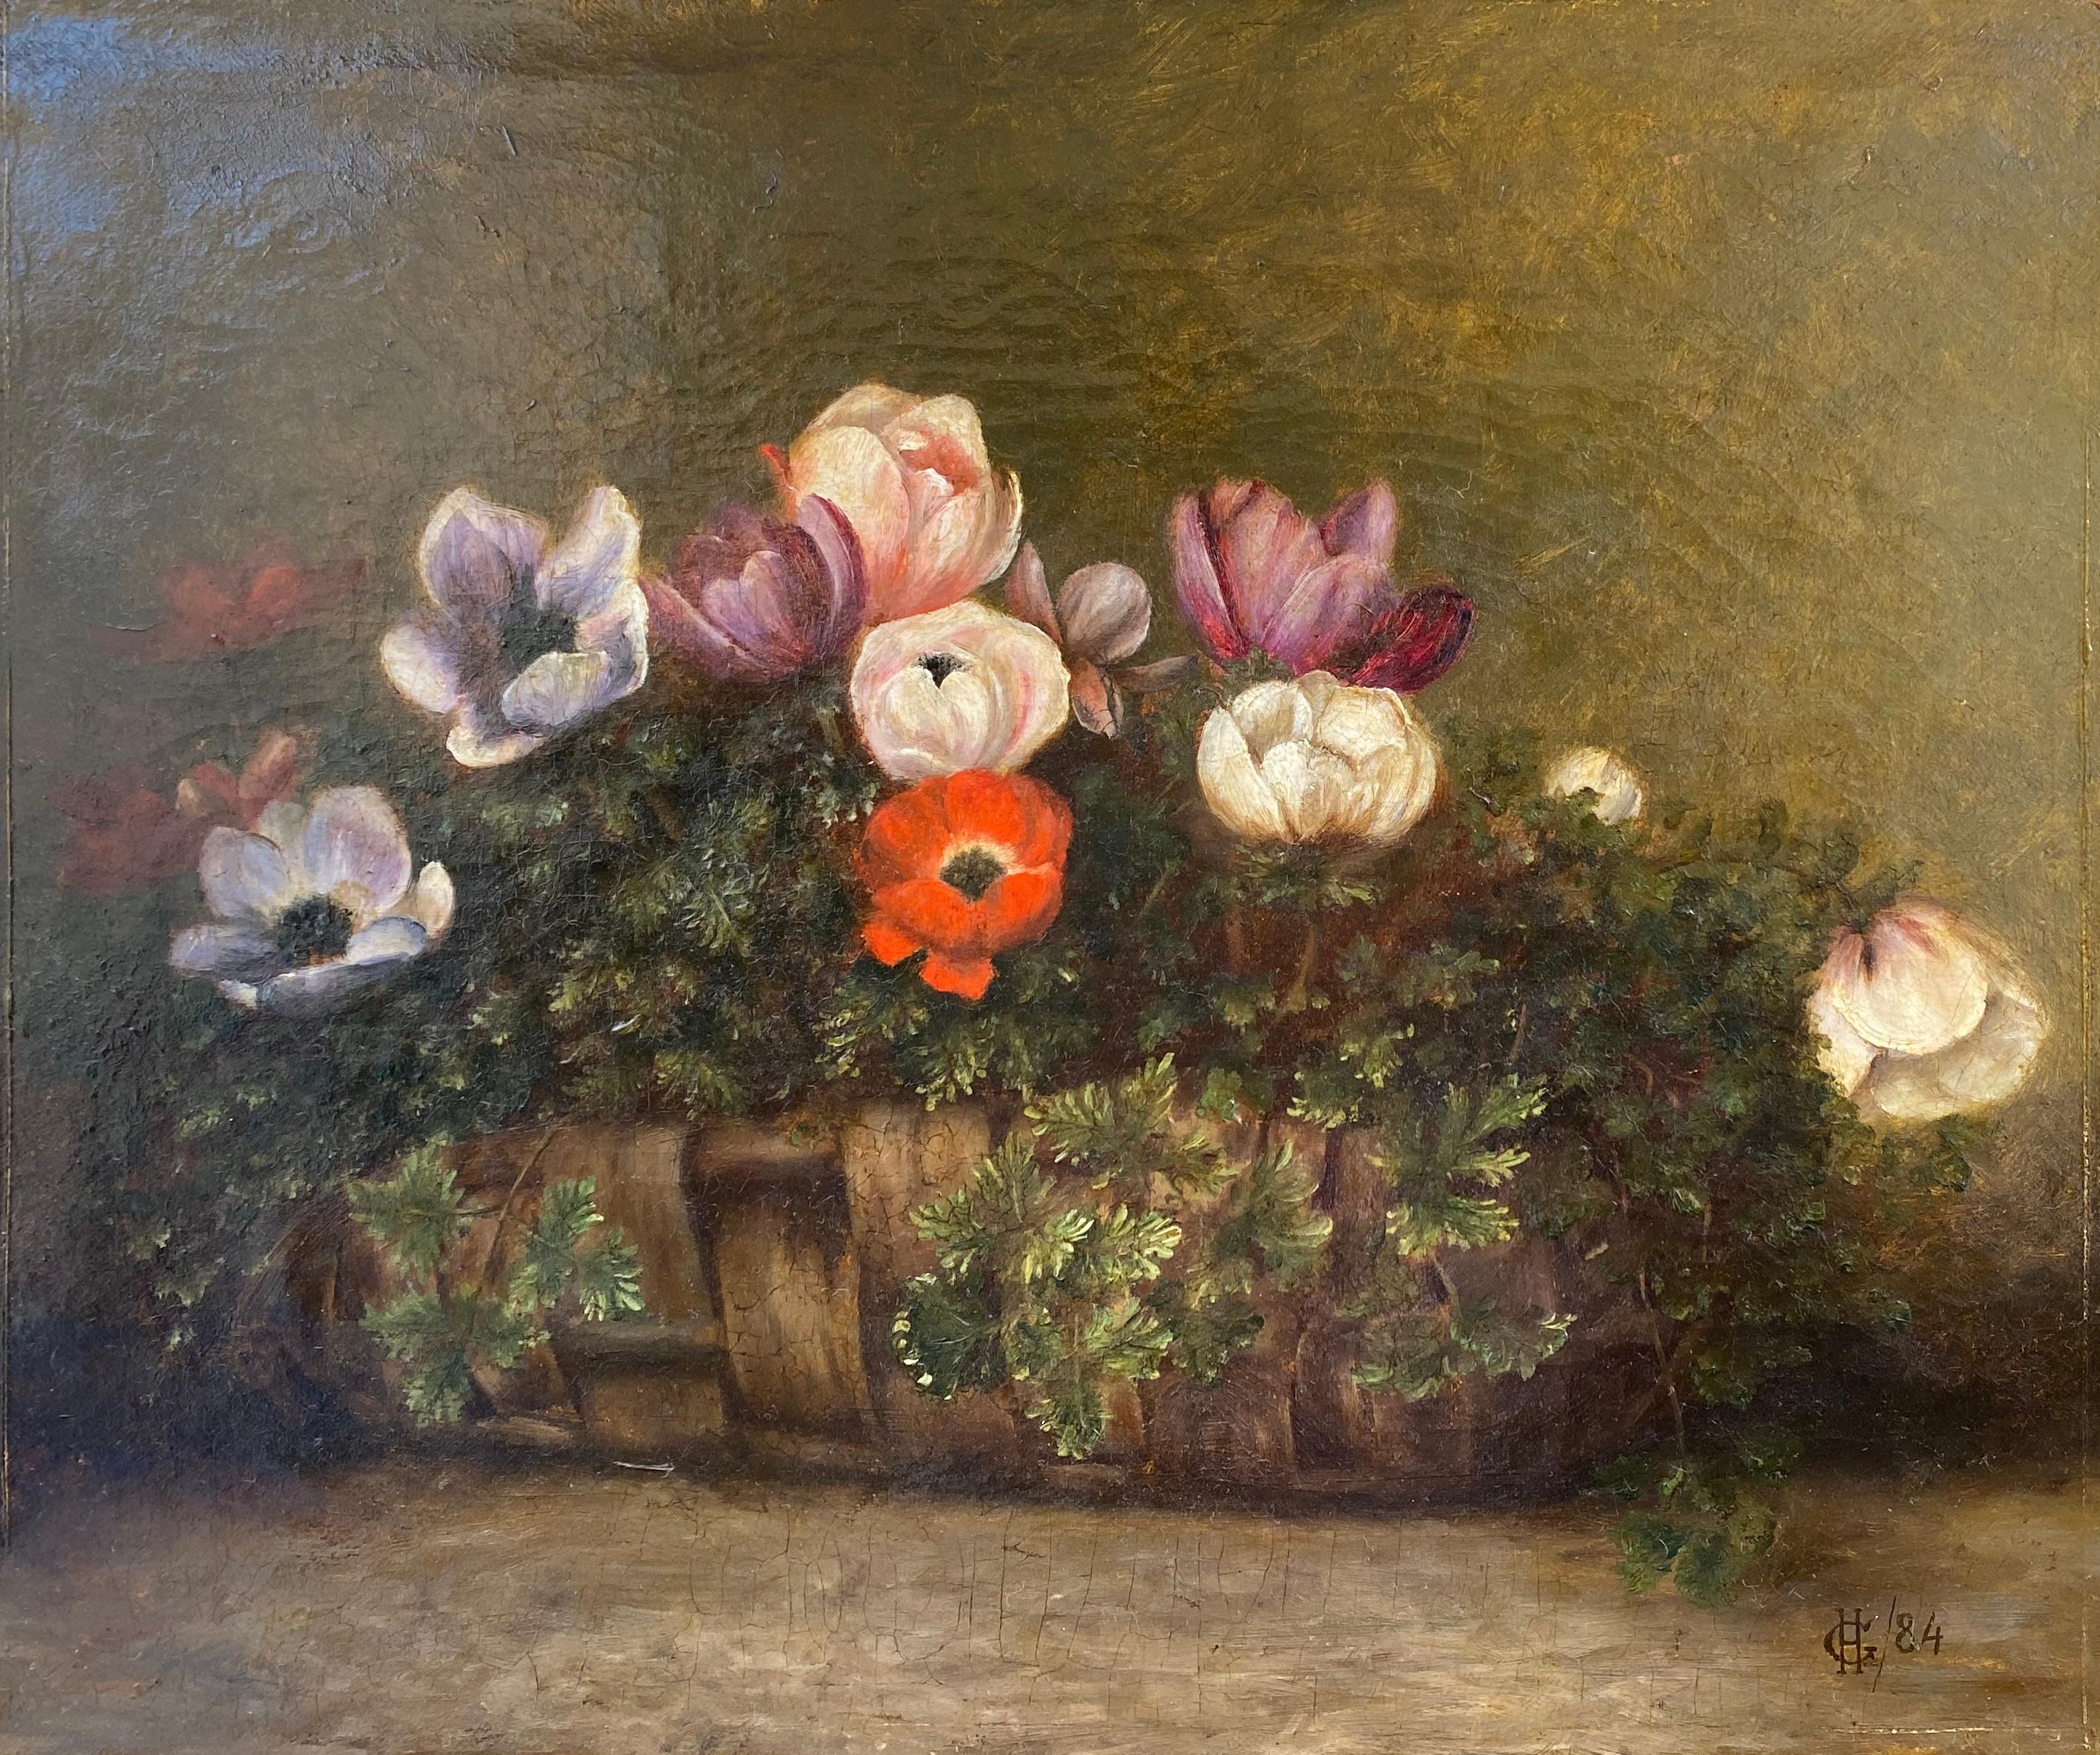 Corbeille en osier avec motifs anciens, cadeau de fête modeste, nature morte florale du 19ème siècle - Painting de Unknown